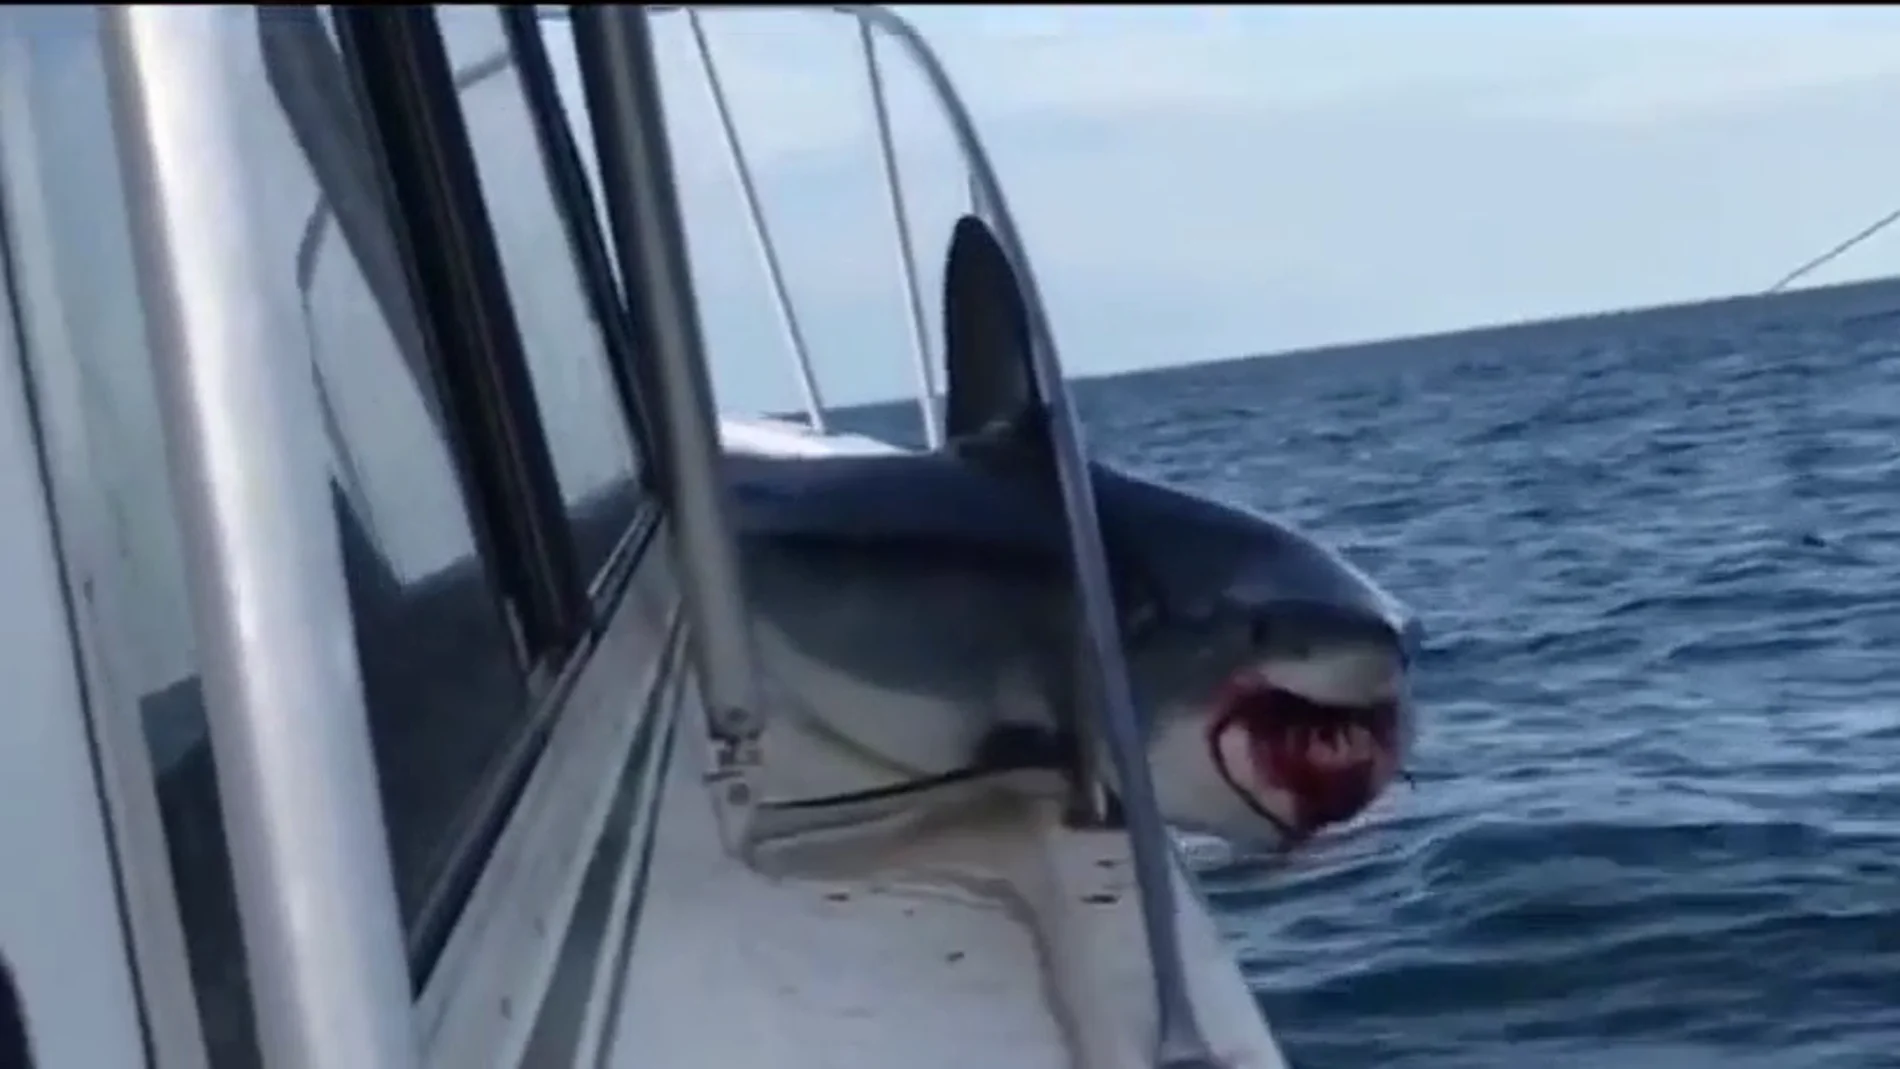 El tiburón atrapado en el barco